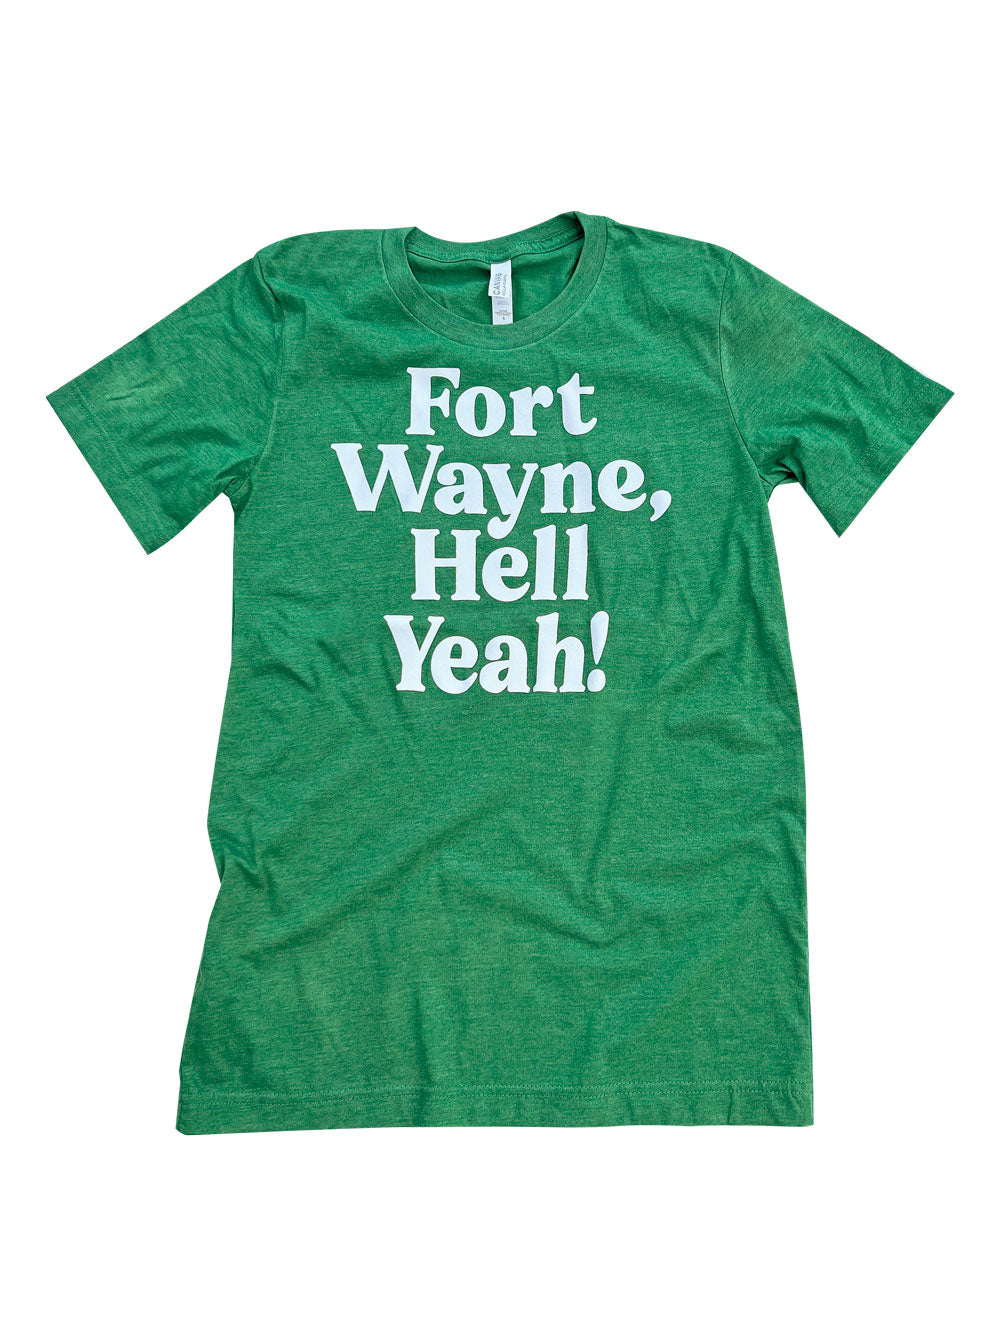 Fort Wayne, Hell Yeah grass green heather t-shirt